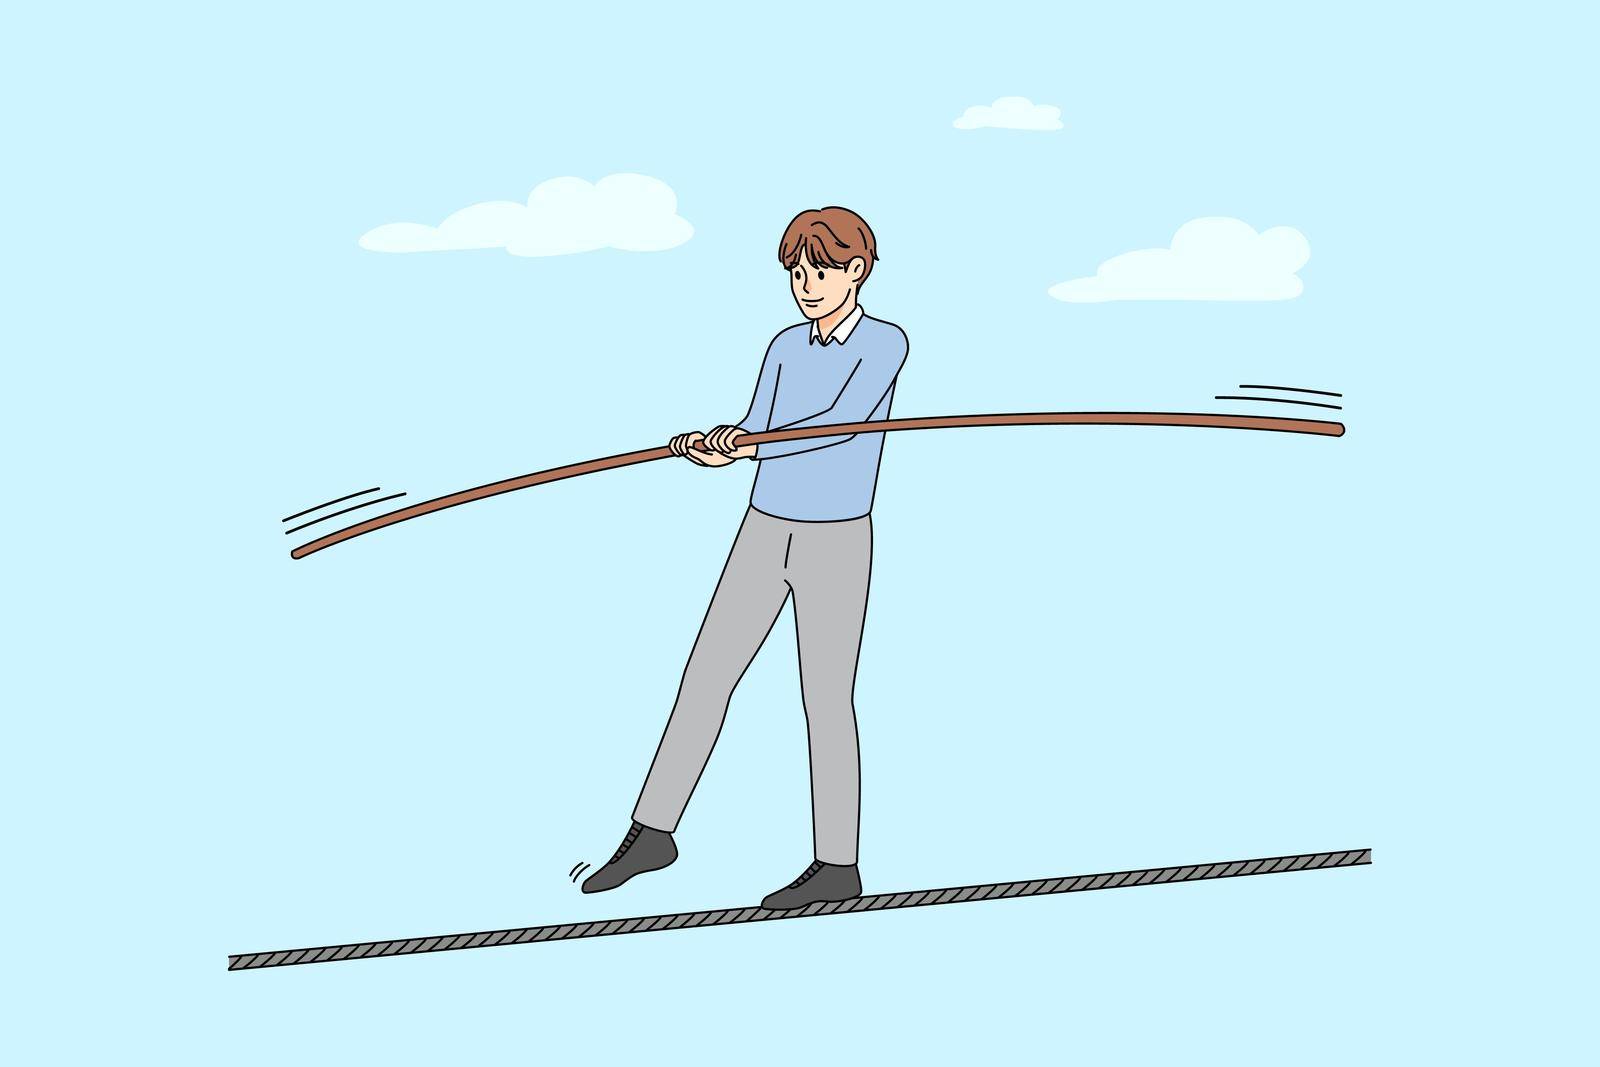 Man walking on thin rope balancing by Vasilyeu